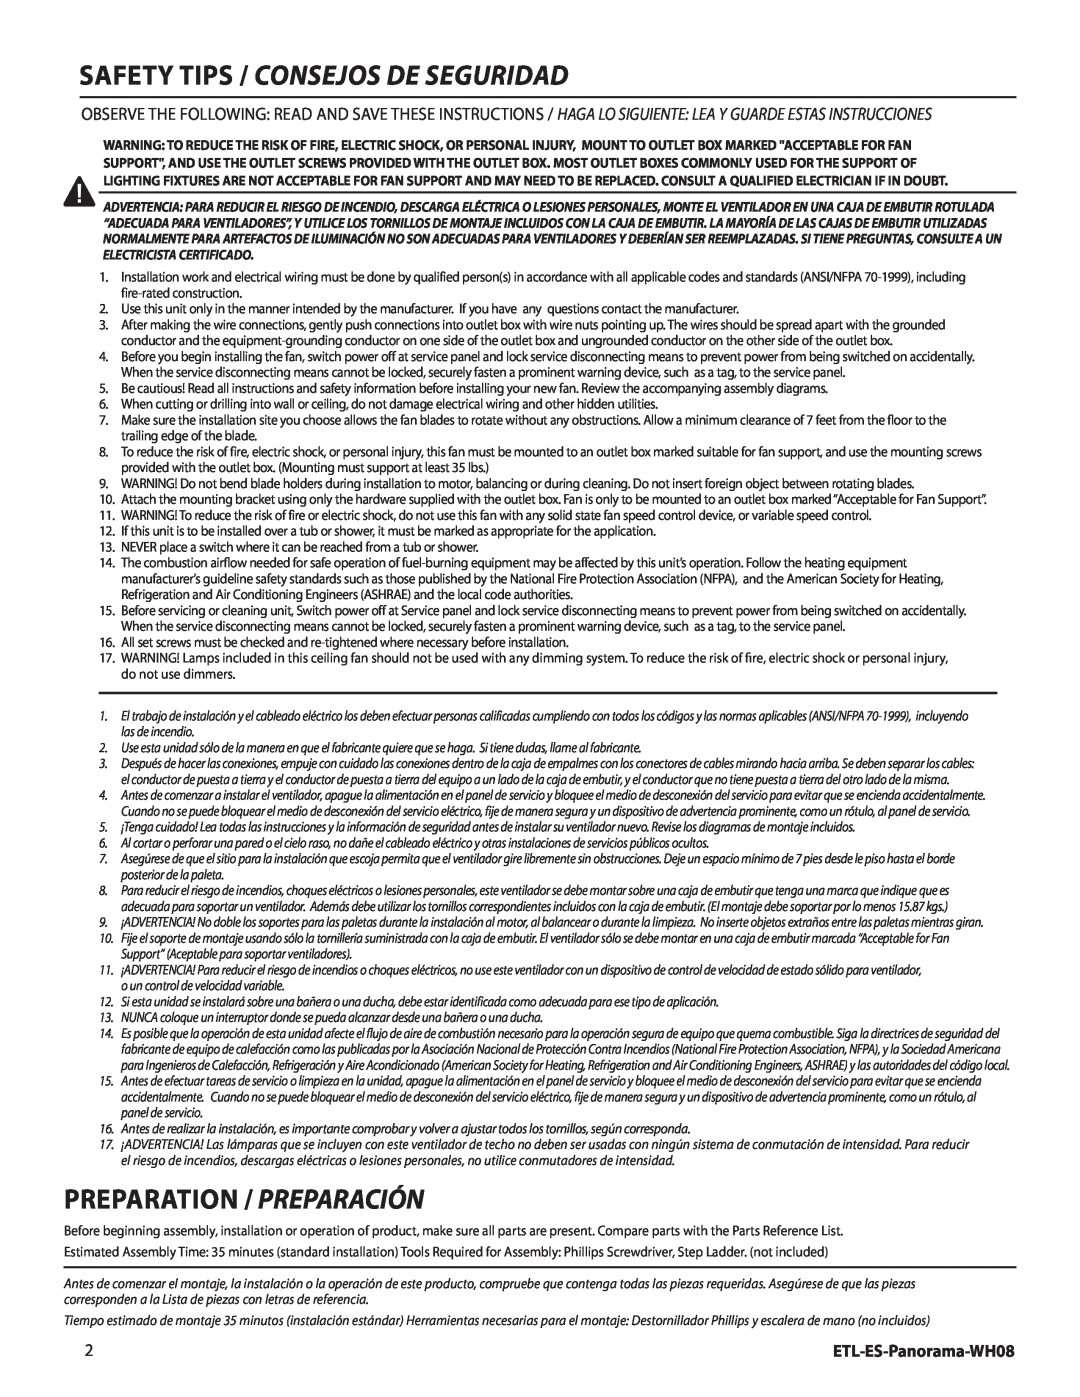 Westinghouse Safety tips / Consejos de seguridad, Preparation / Preparación, ETL-ES-Panorama-WH08 